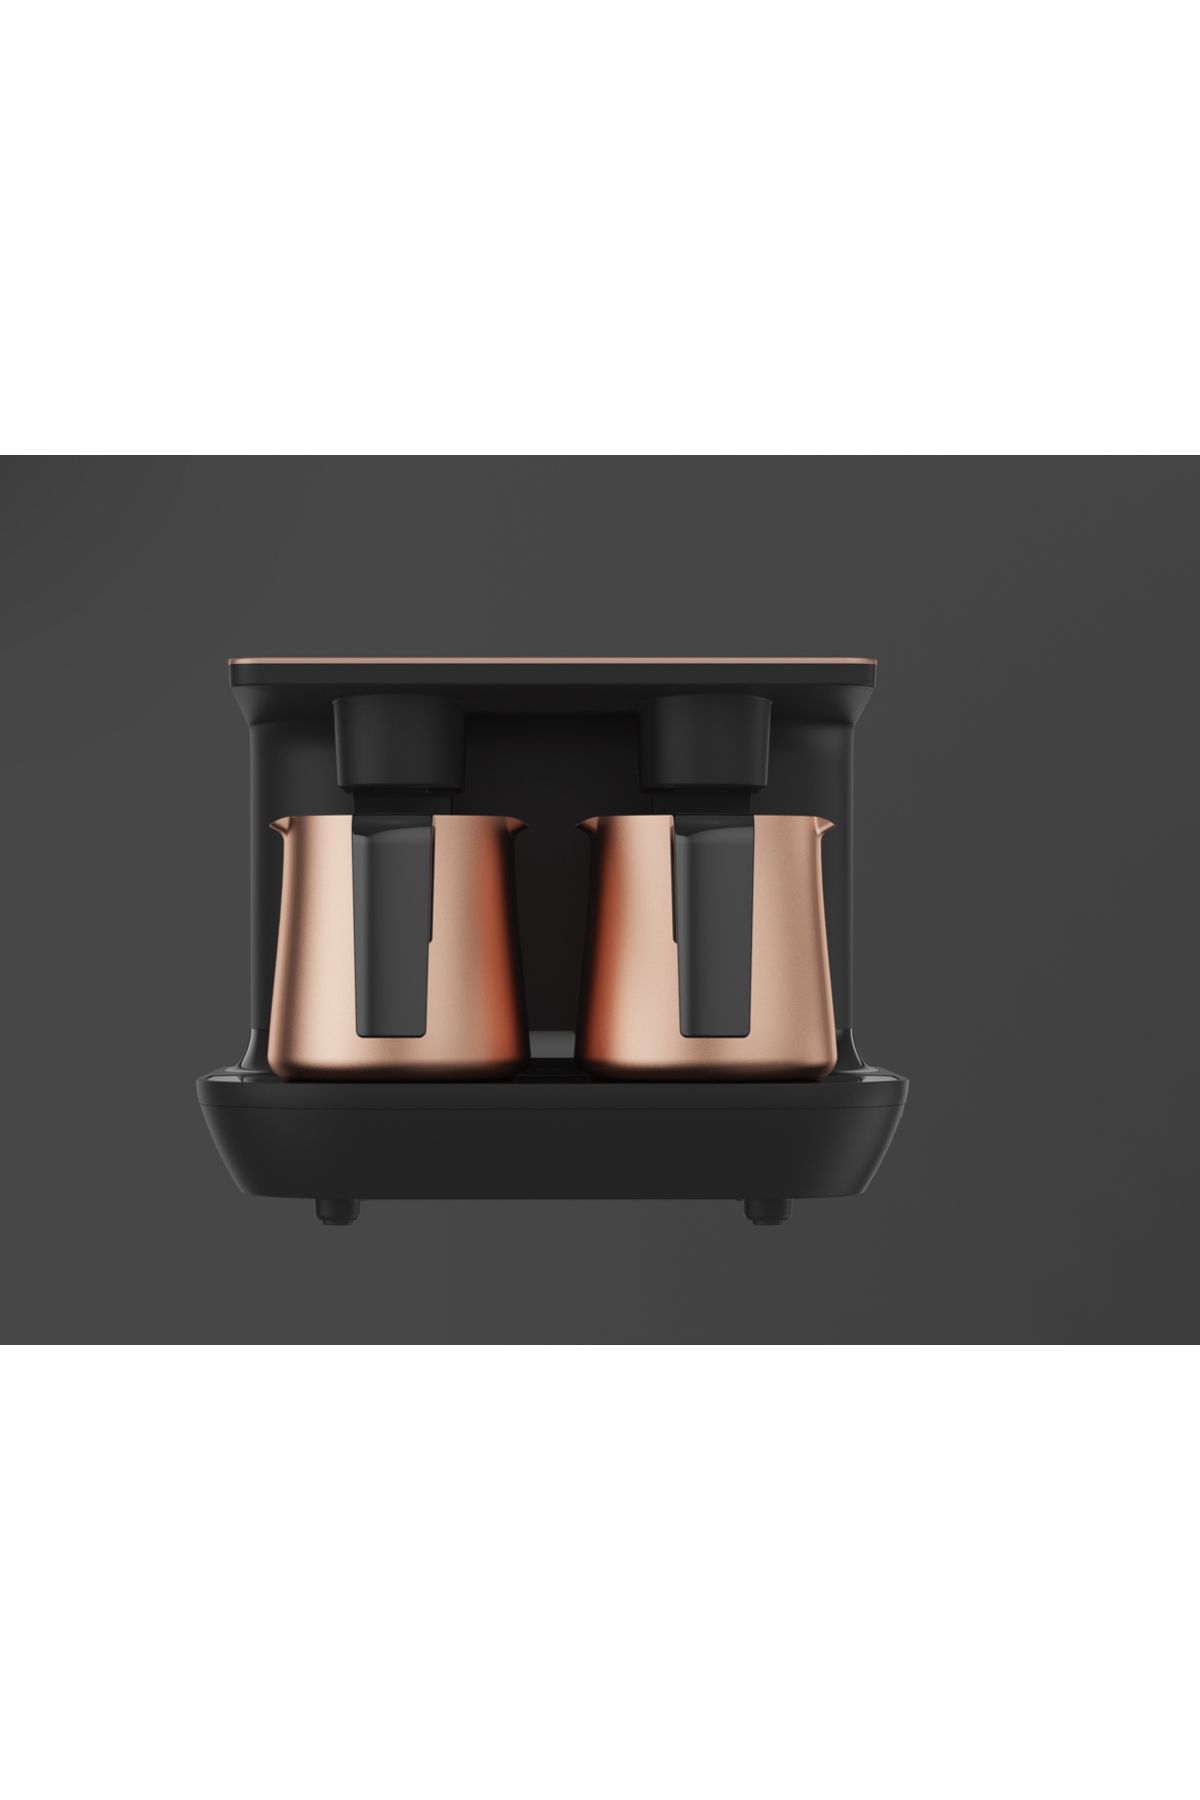 Arçelik 6 Kişilik Telve Kahve Makinası 1.5 Litre Premium Siyah